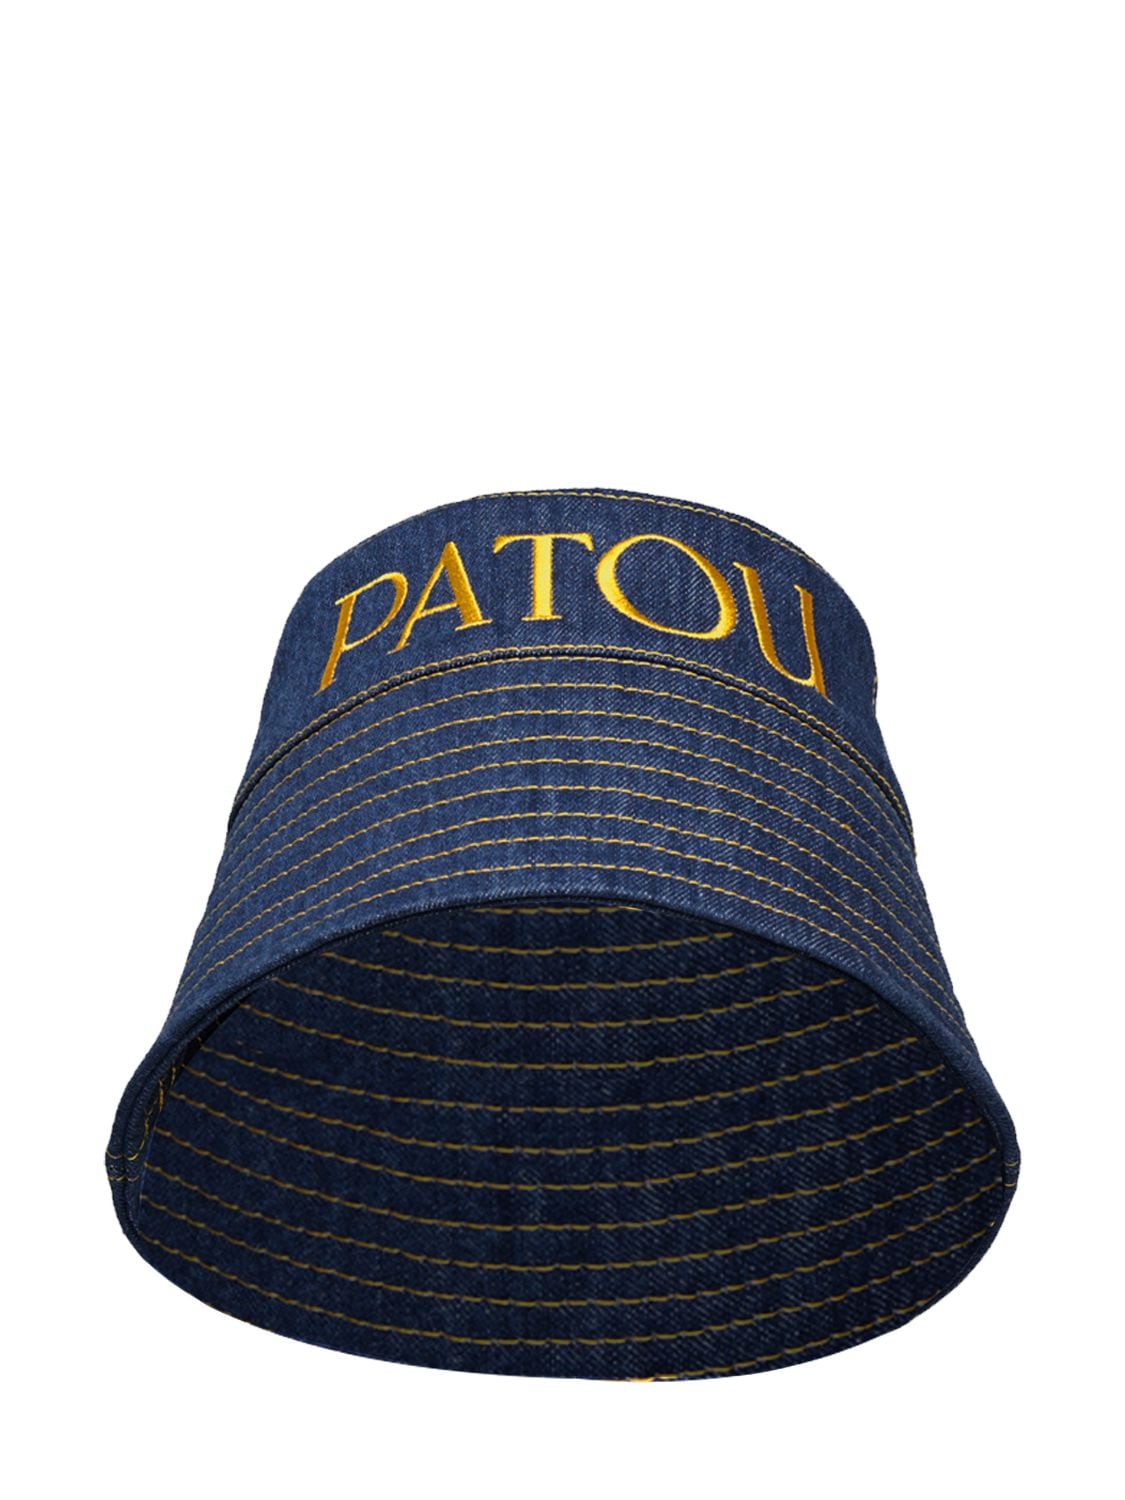 Image of Patou Logo Denim Bucket Hat